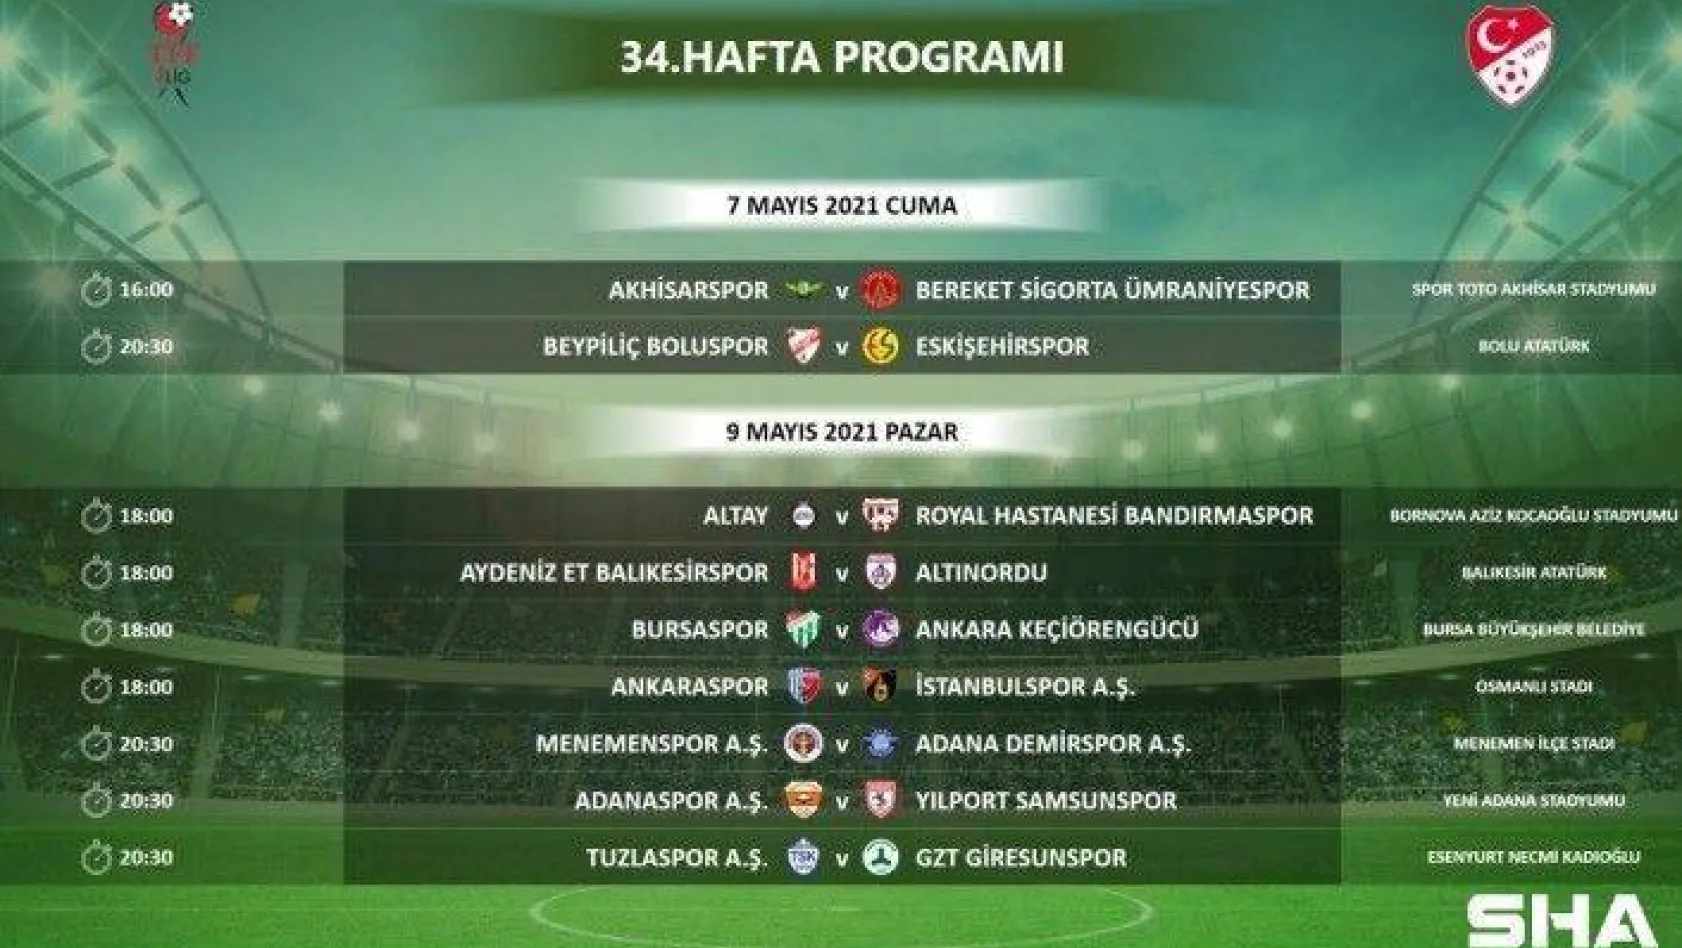 TFF 1. Lig 34. hafta programı açıklandı